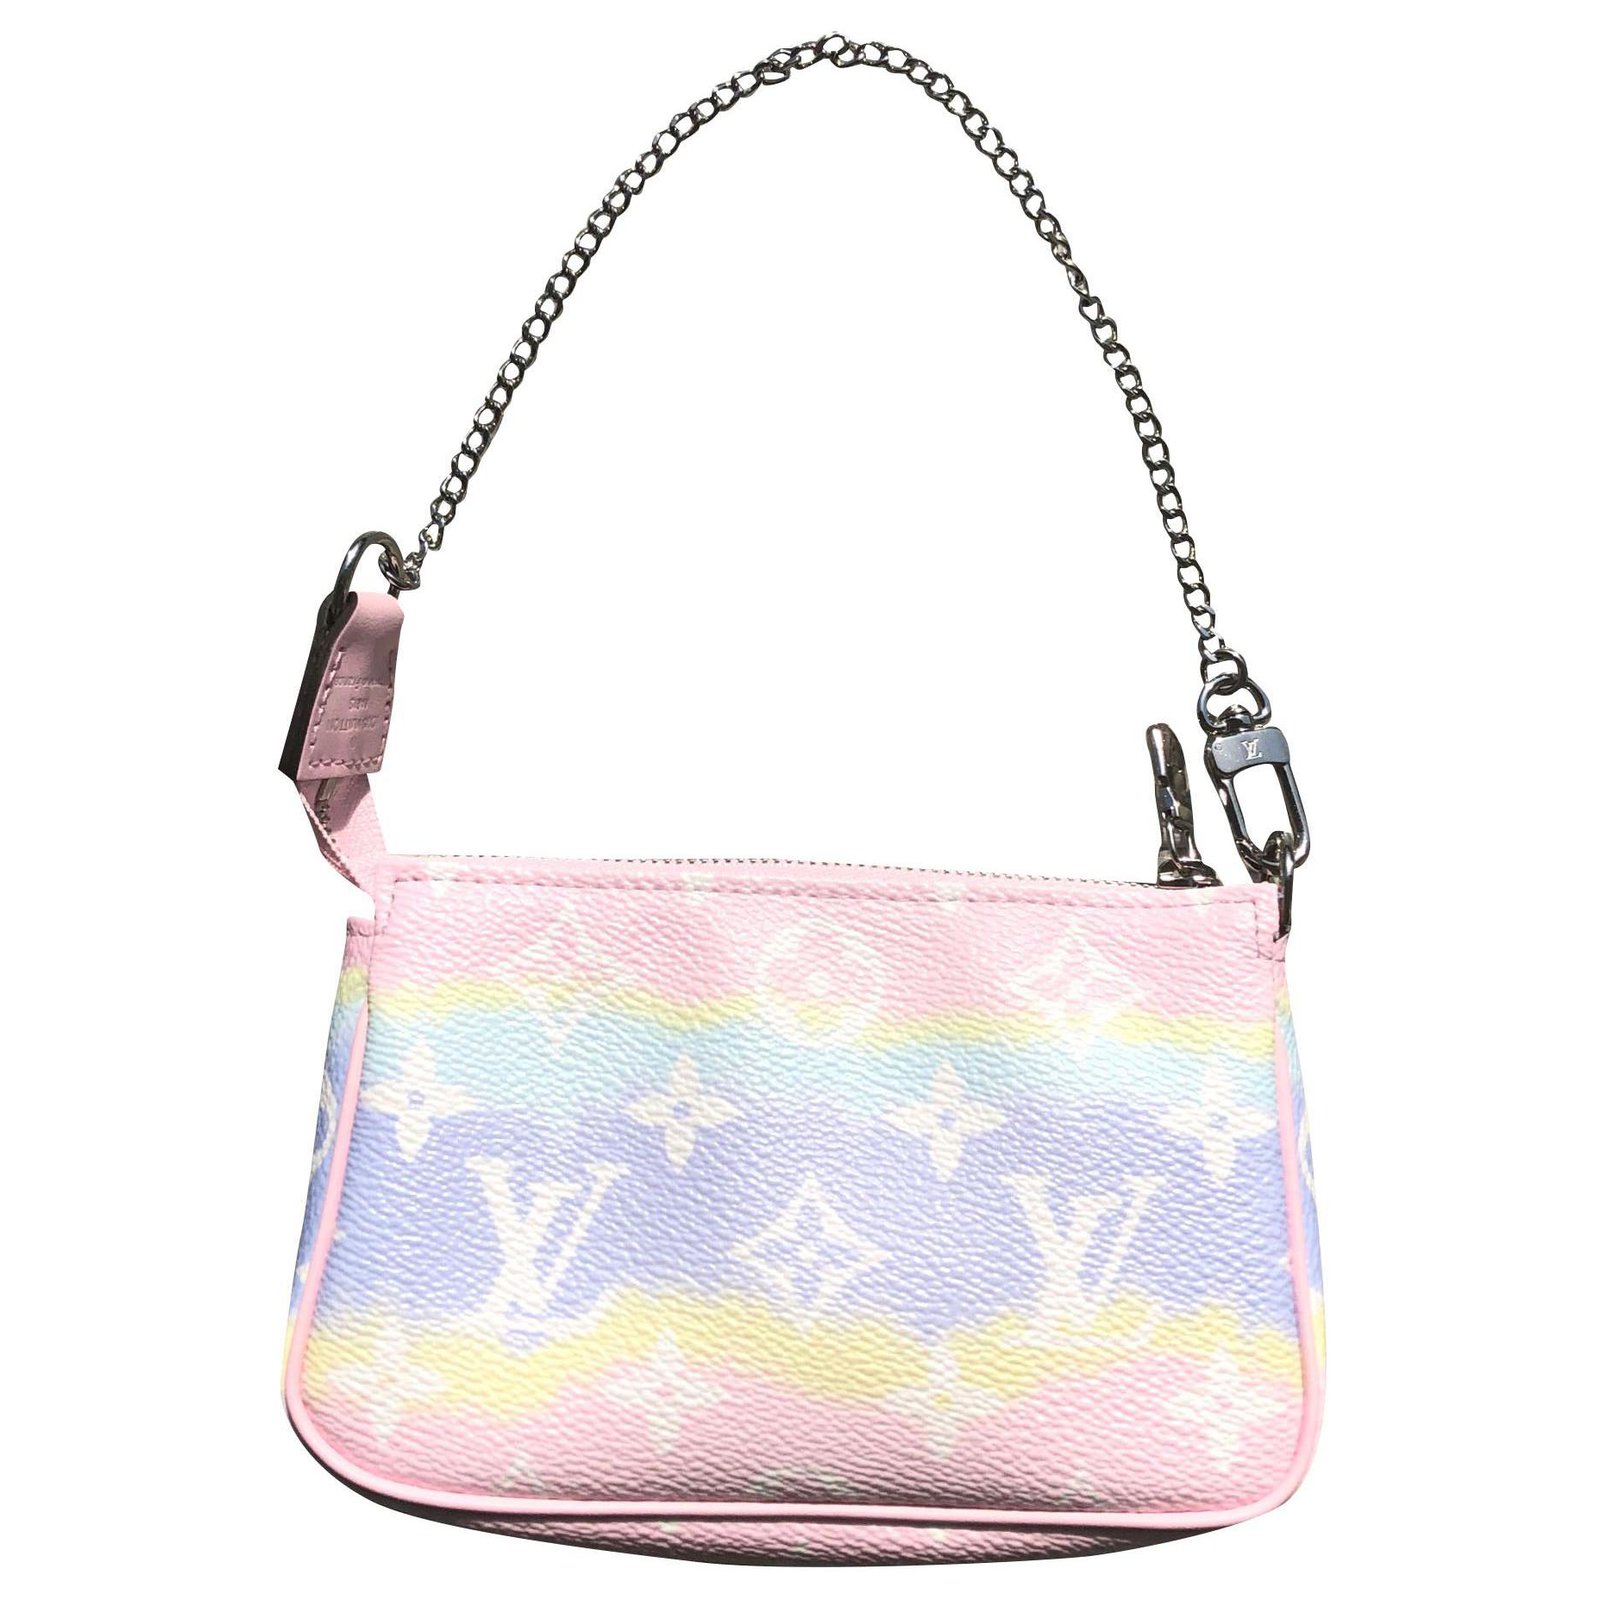 Louis Vuitton Lv Accessories Pouch Bag